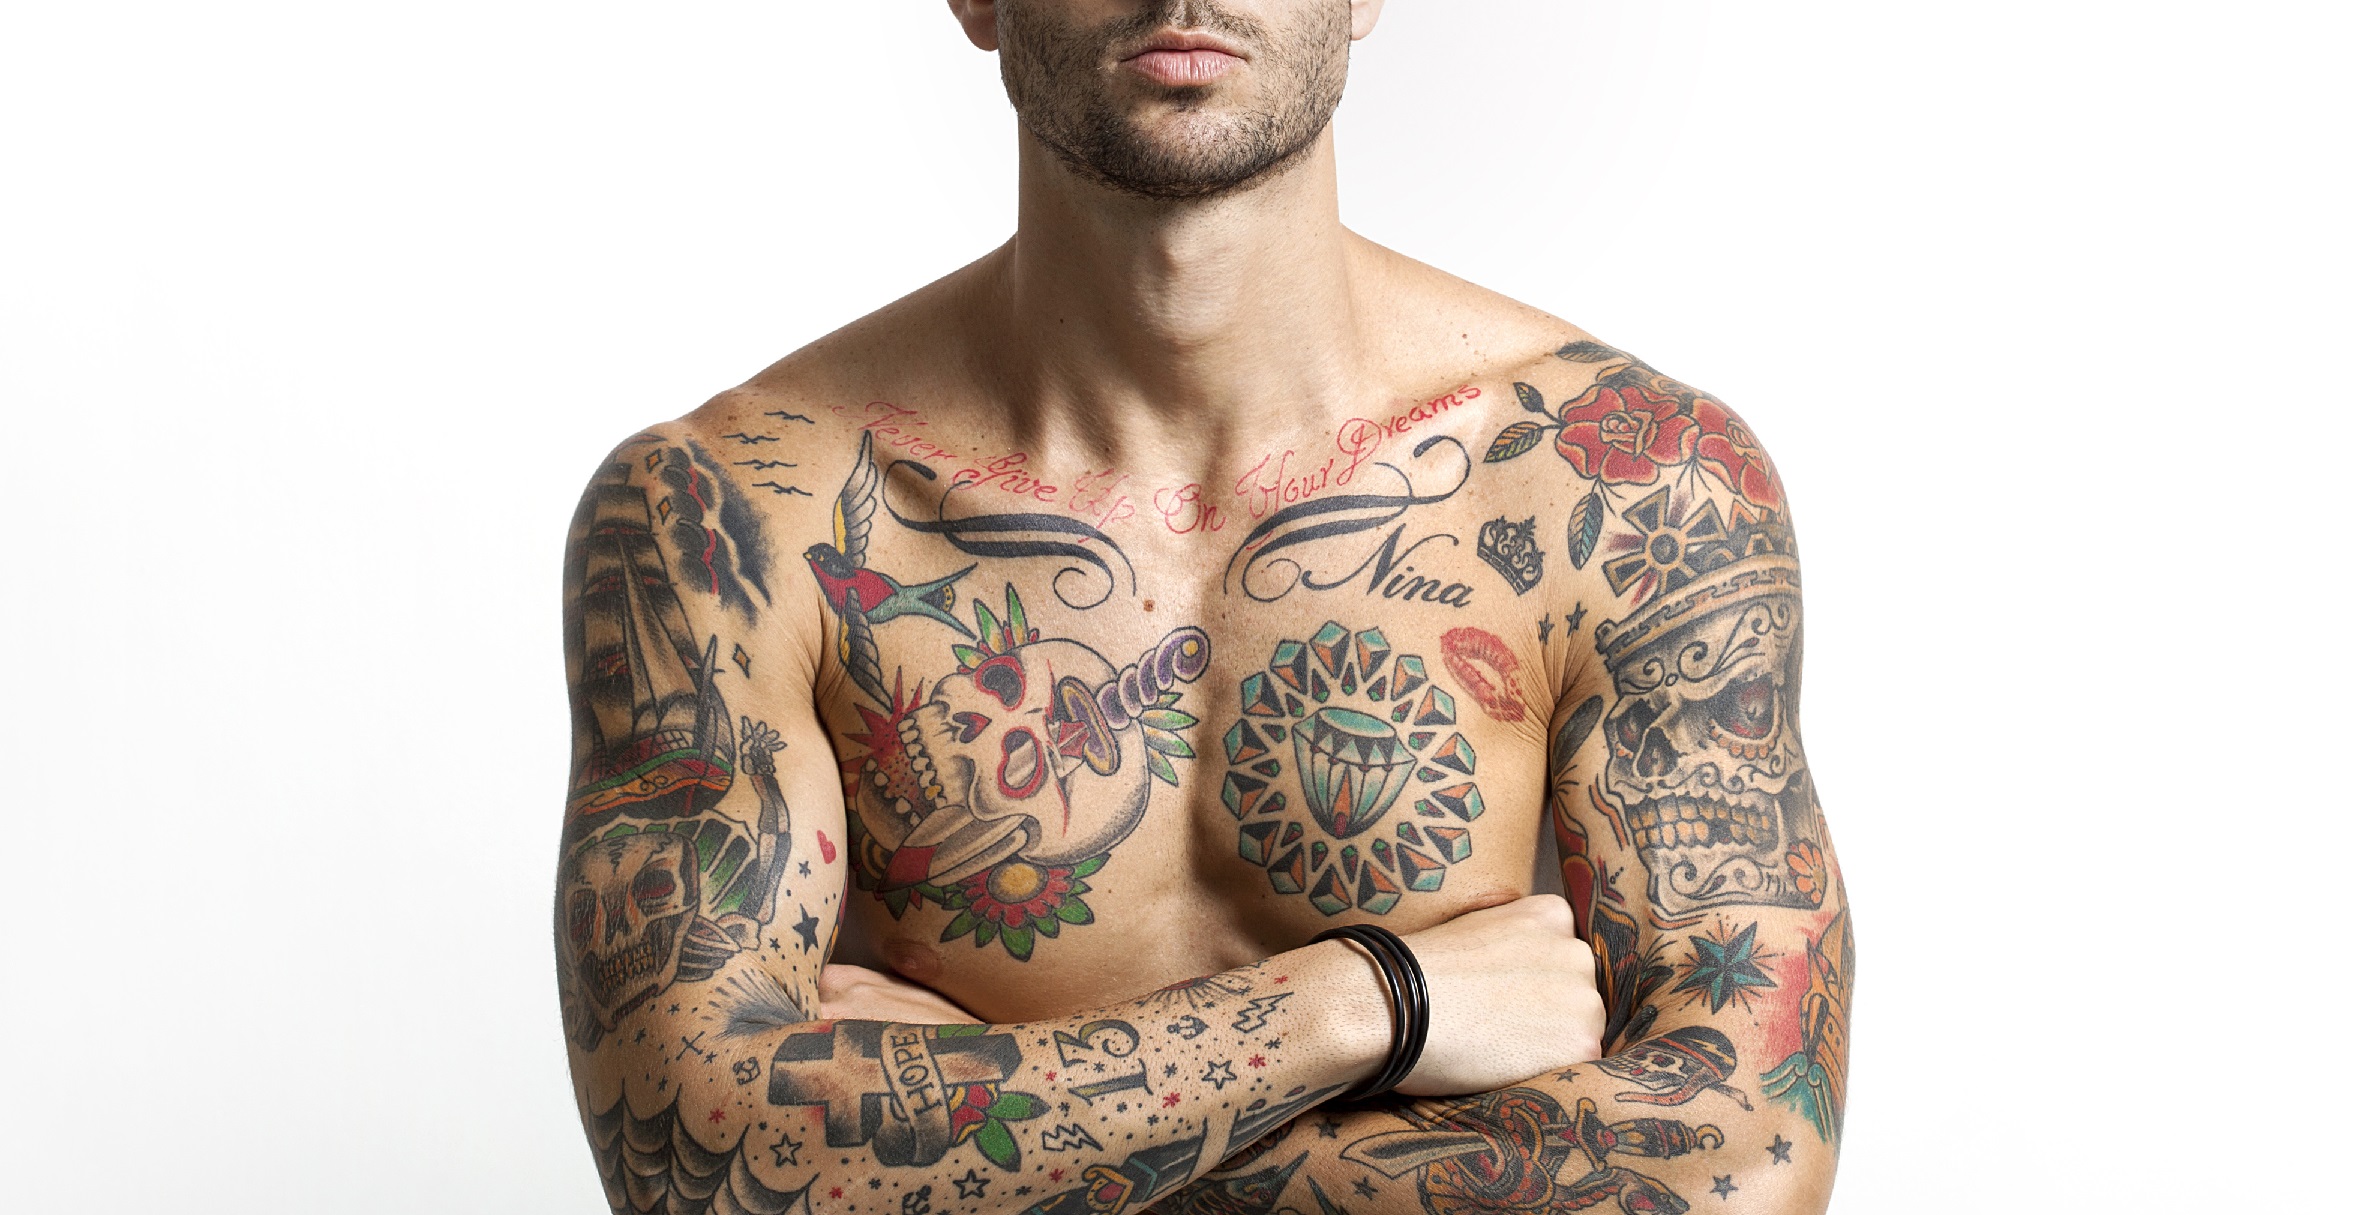 Extreme tattoos und piercings bei frauen